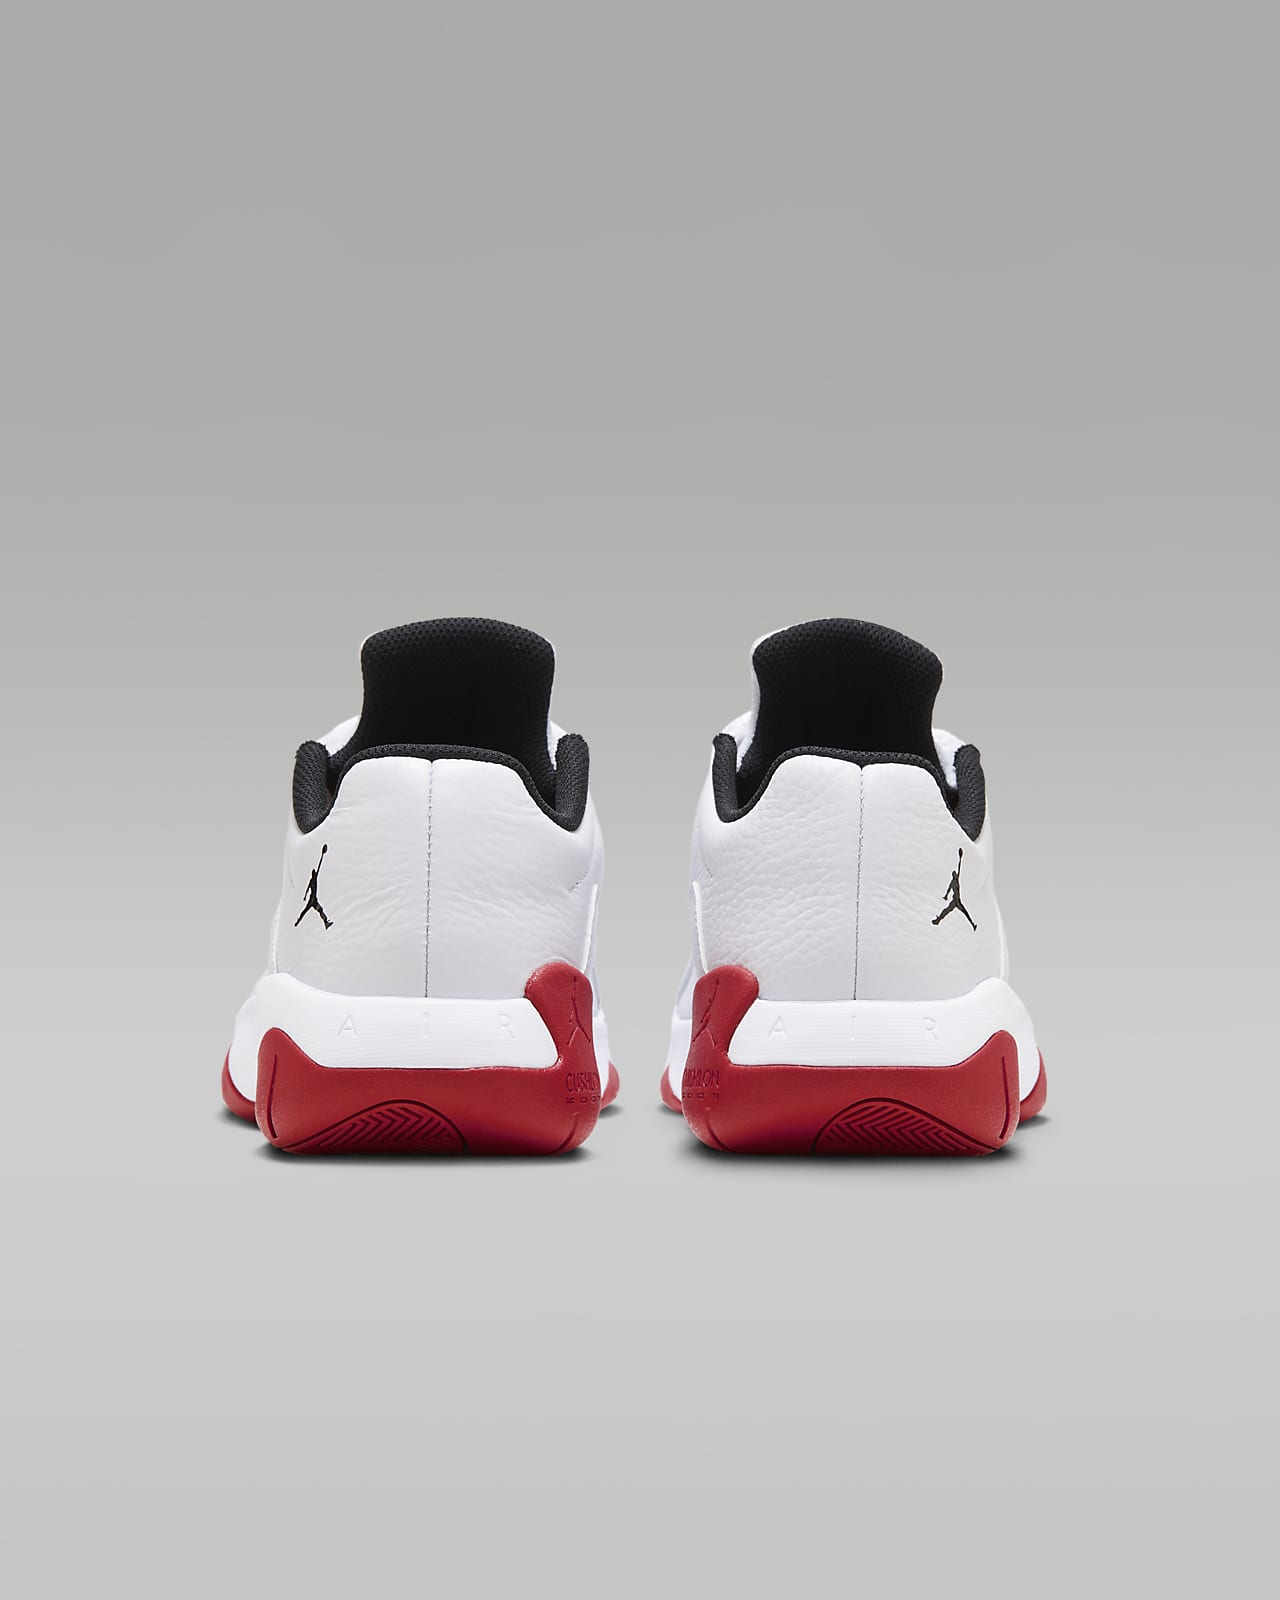 Chaussures NIKE Air Jordan 11 Cmft Low Noir,Blanc - Homme/Adulte